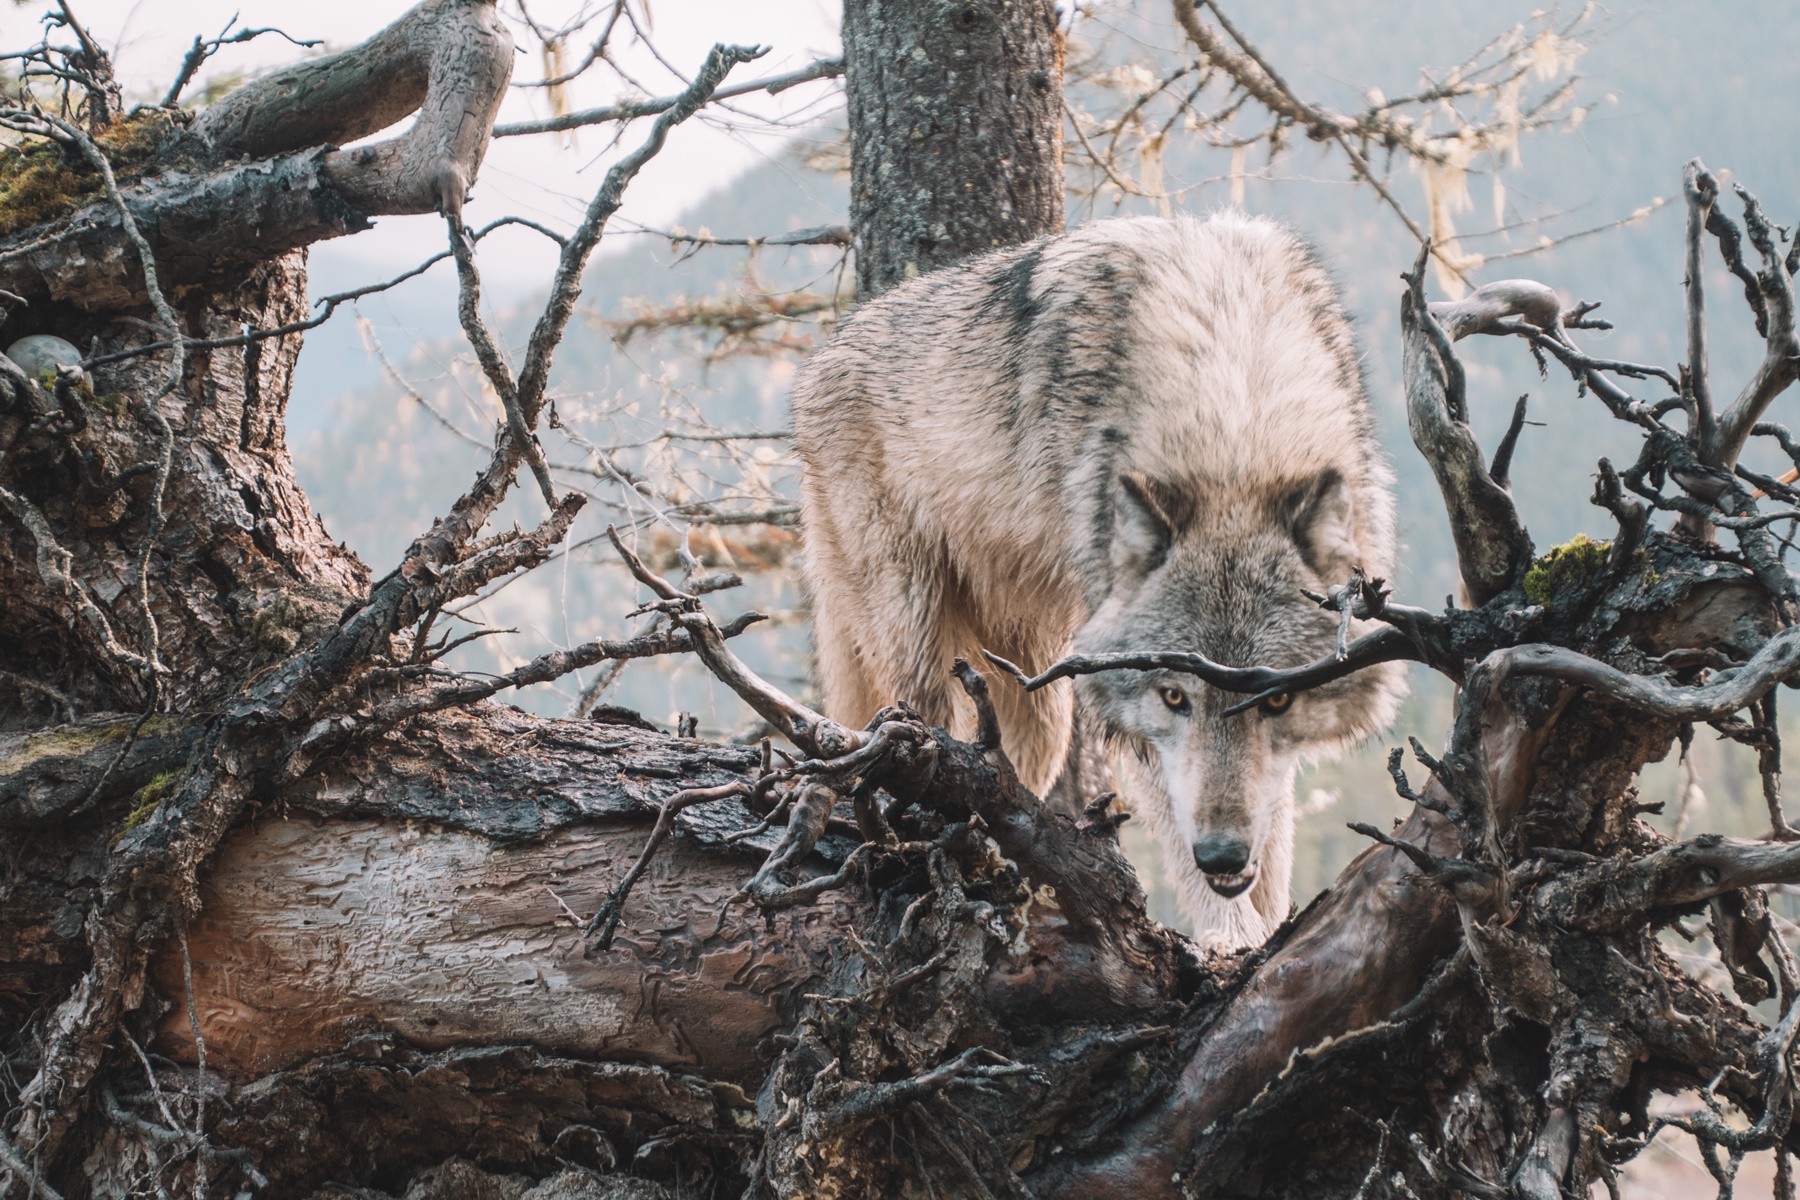 Λύκος στο Διόνυσο: “Μεγάλο και εξαιρετικά άγριο το ζώο” – Εμφανίστηκε σε αυλή!